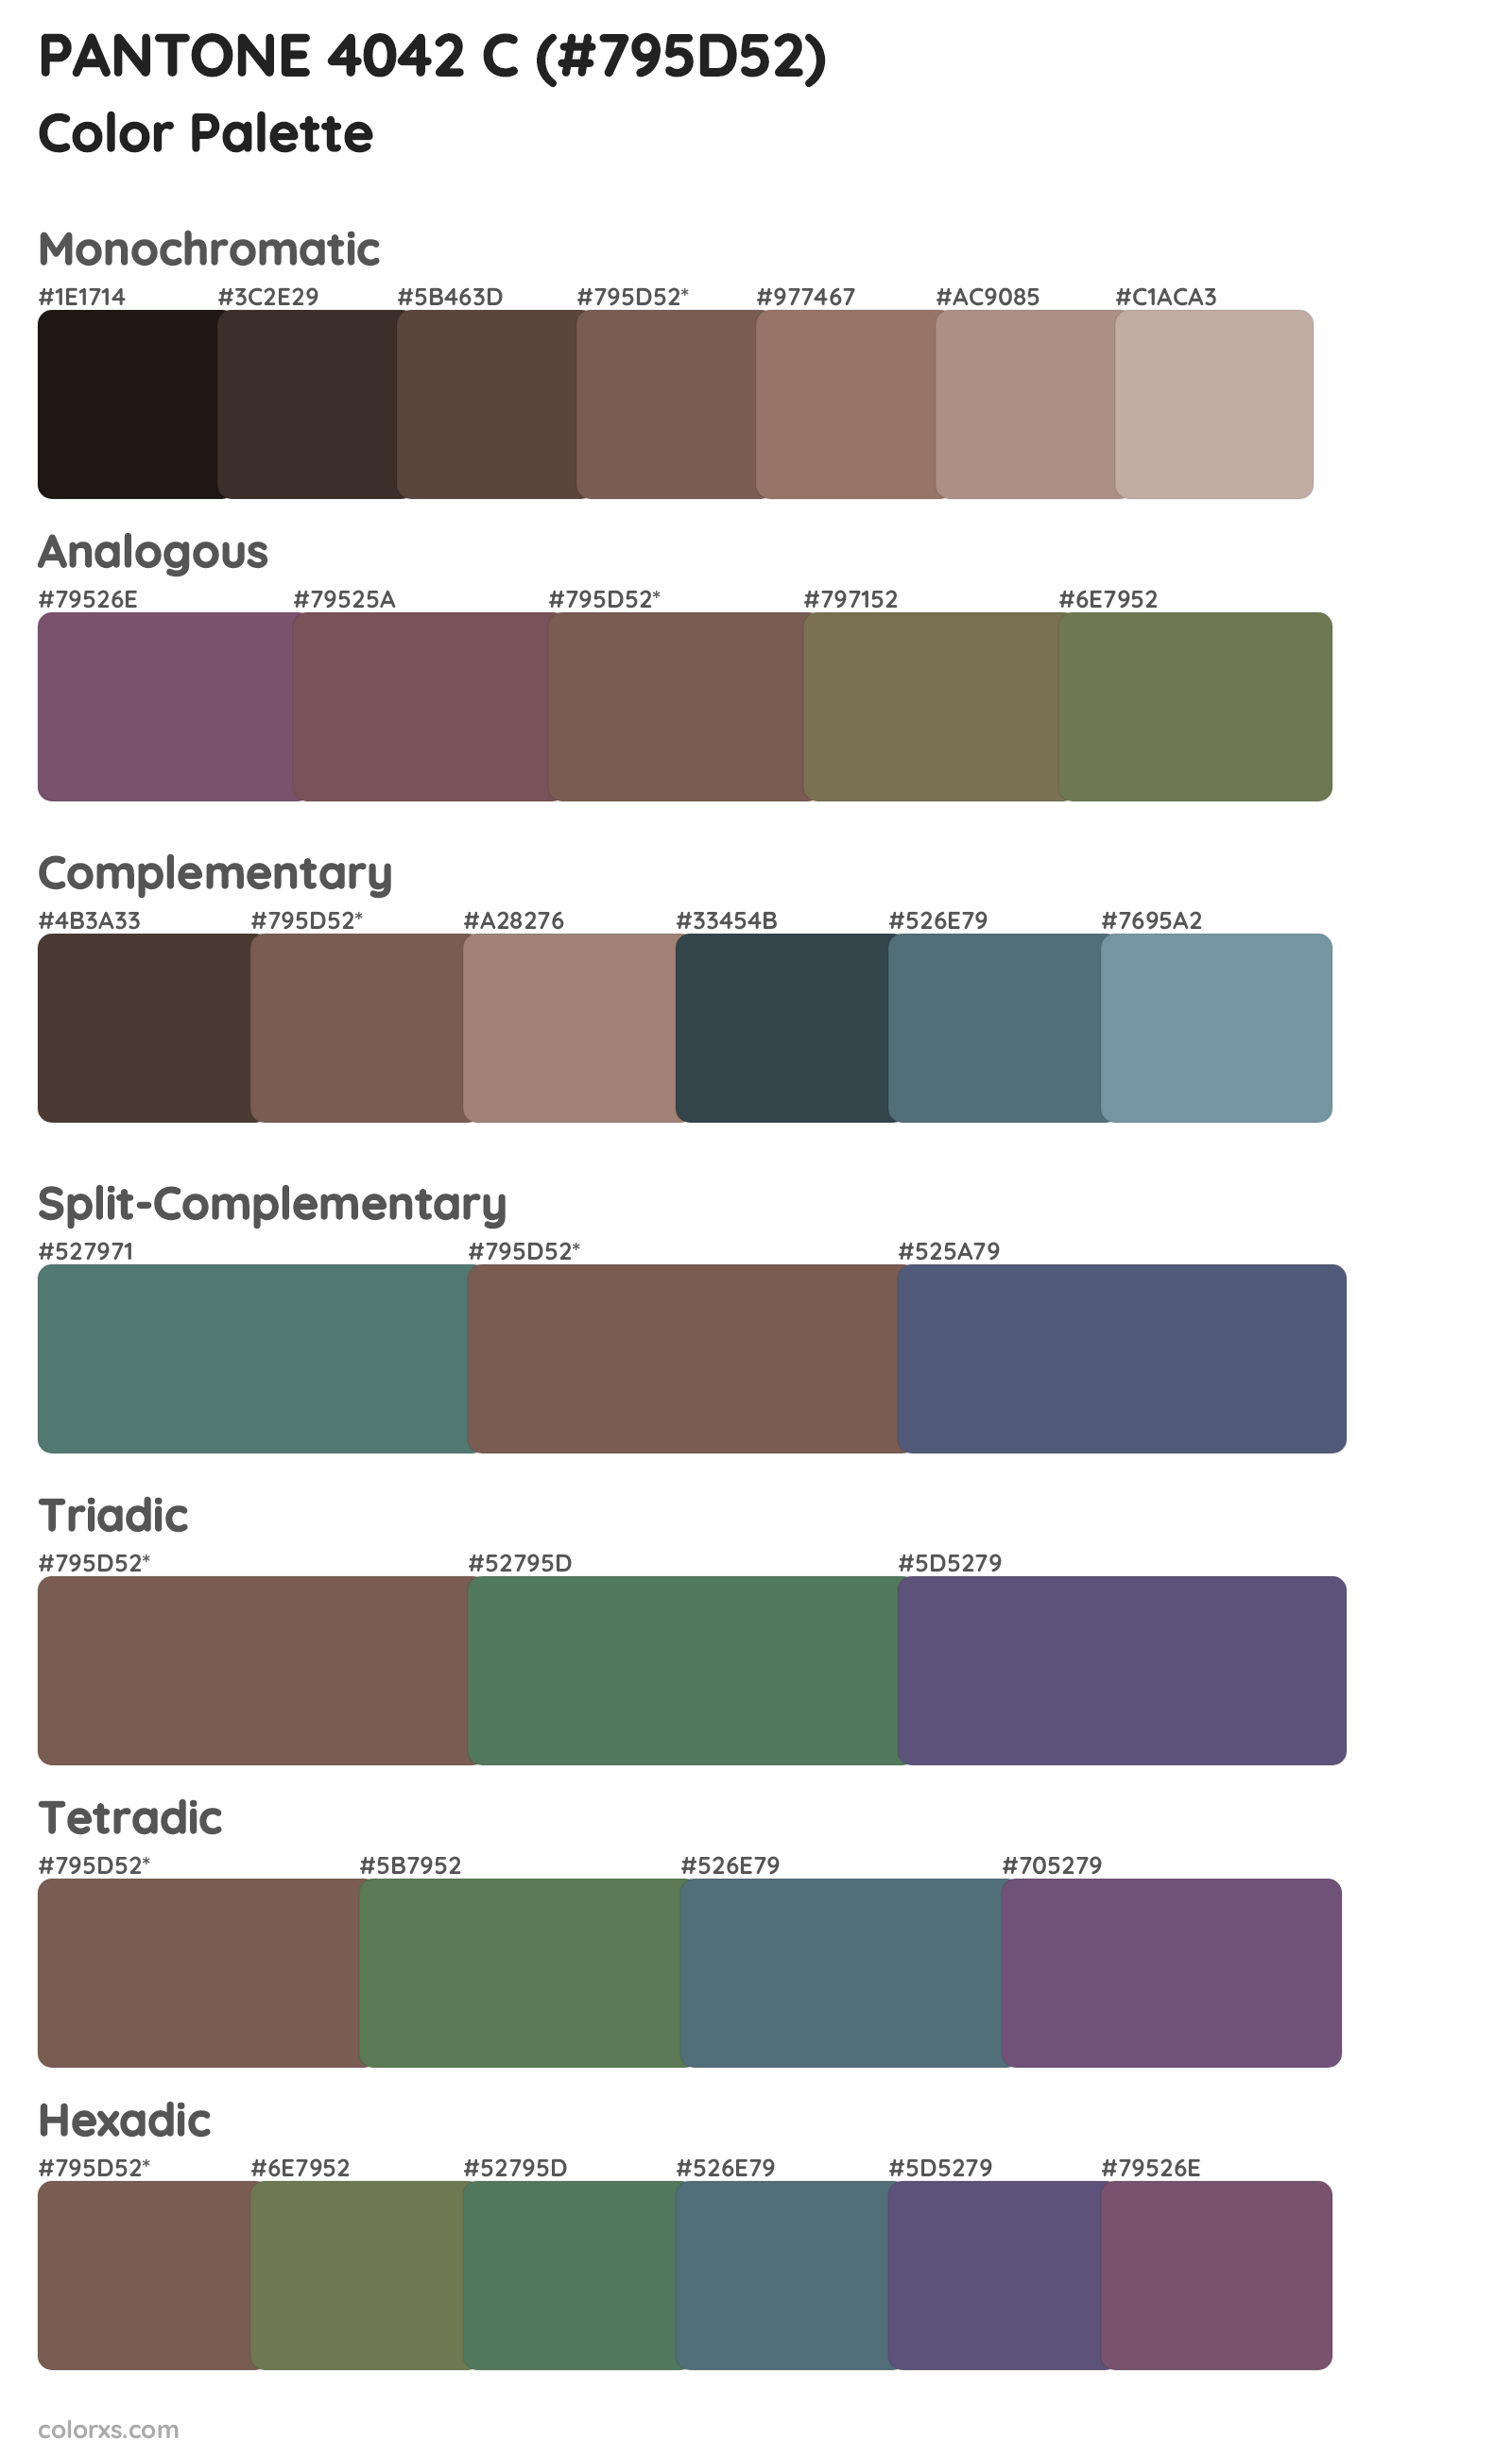 PANTONE 4042 C Color Scheme Palettes